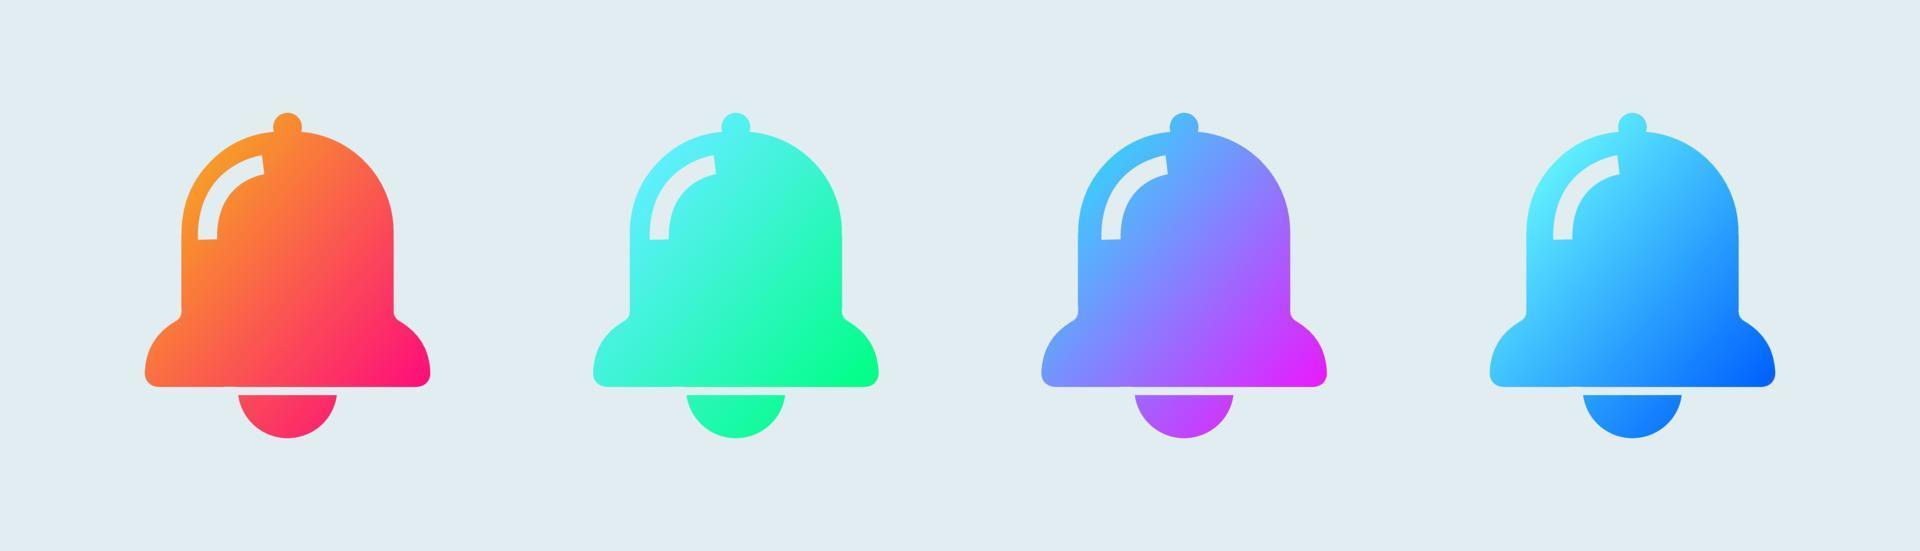 Benachrichtigungs- oder Glockensymbol in einfarbigen Farbverläufen. Social-Media-Element. vektor